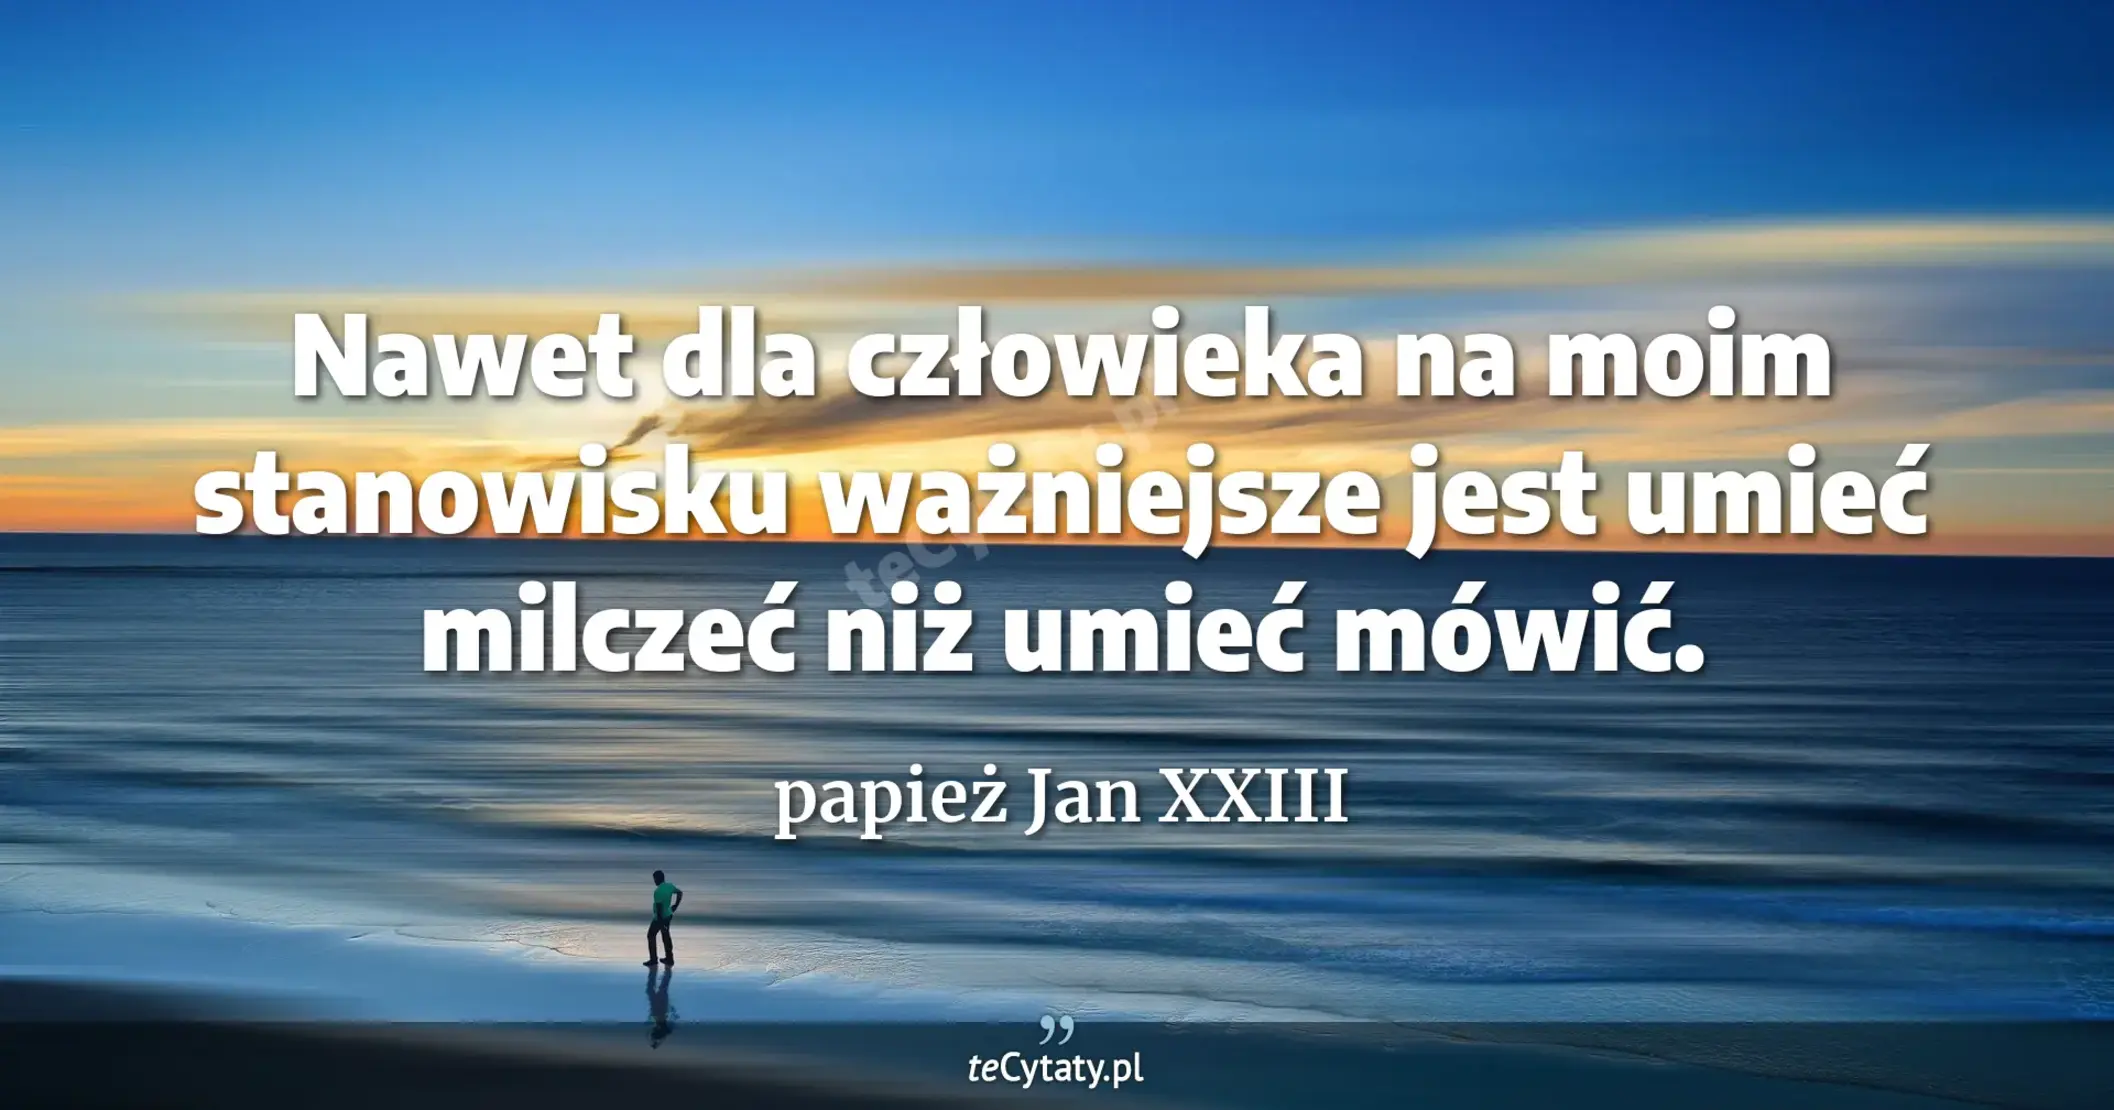 Nawet dla człowieka na moim stanowisku ważniejsze jest umieć milczeć niż umieć mówić. - papież Jan XXIII